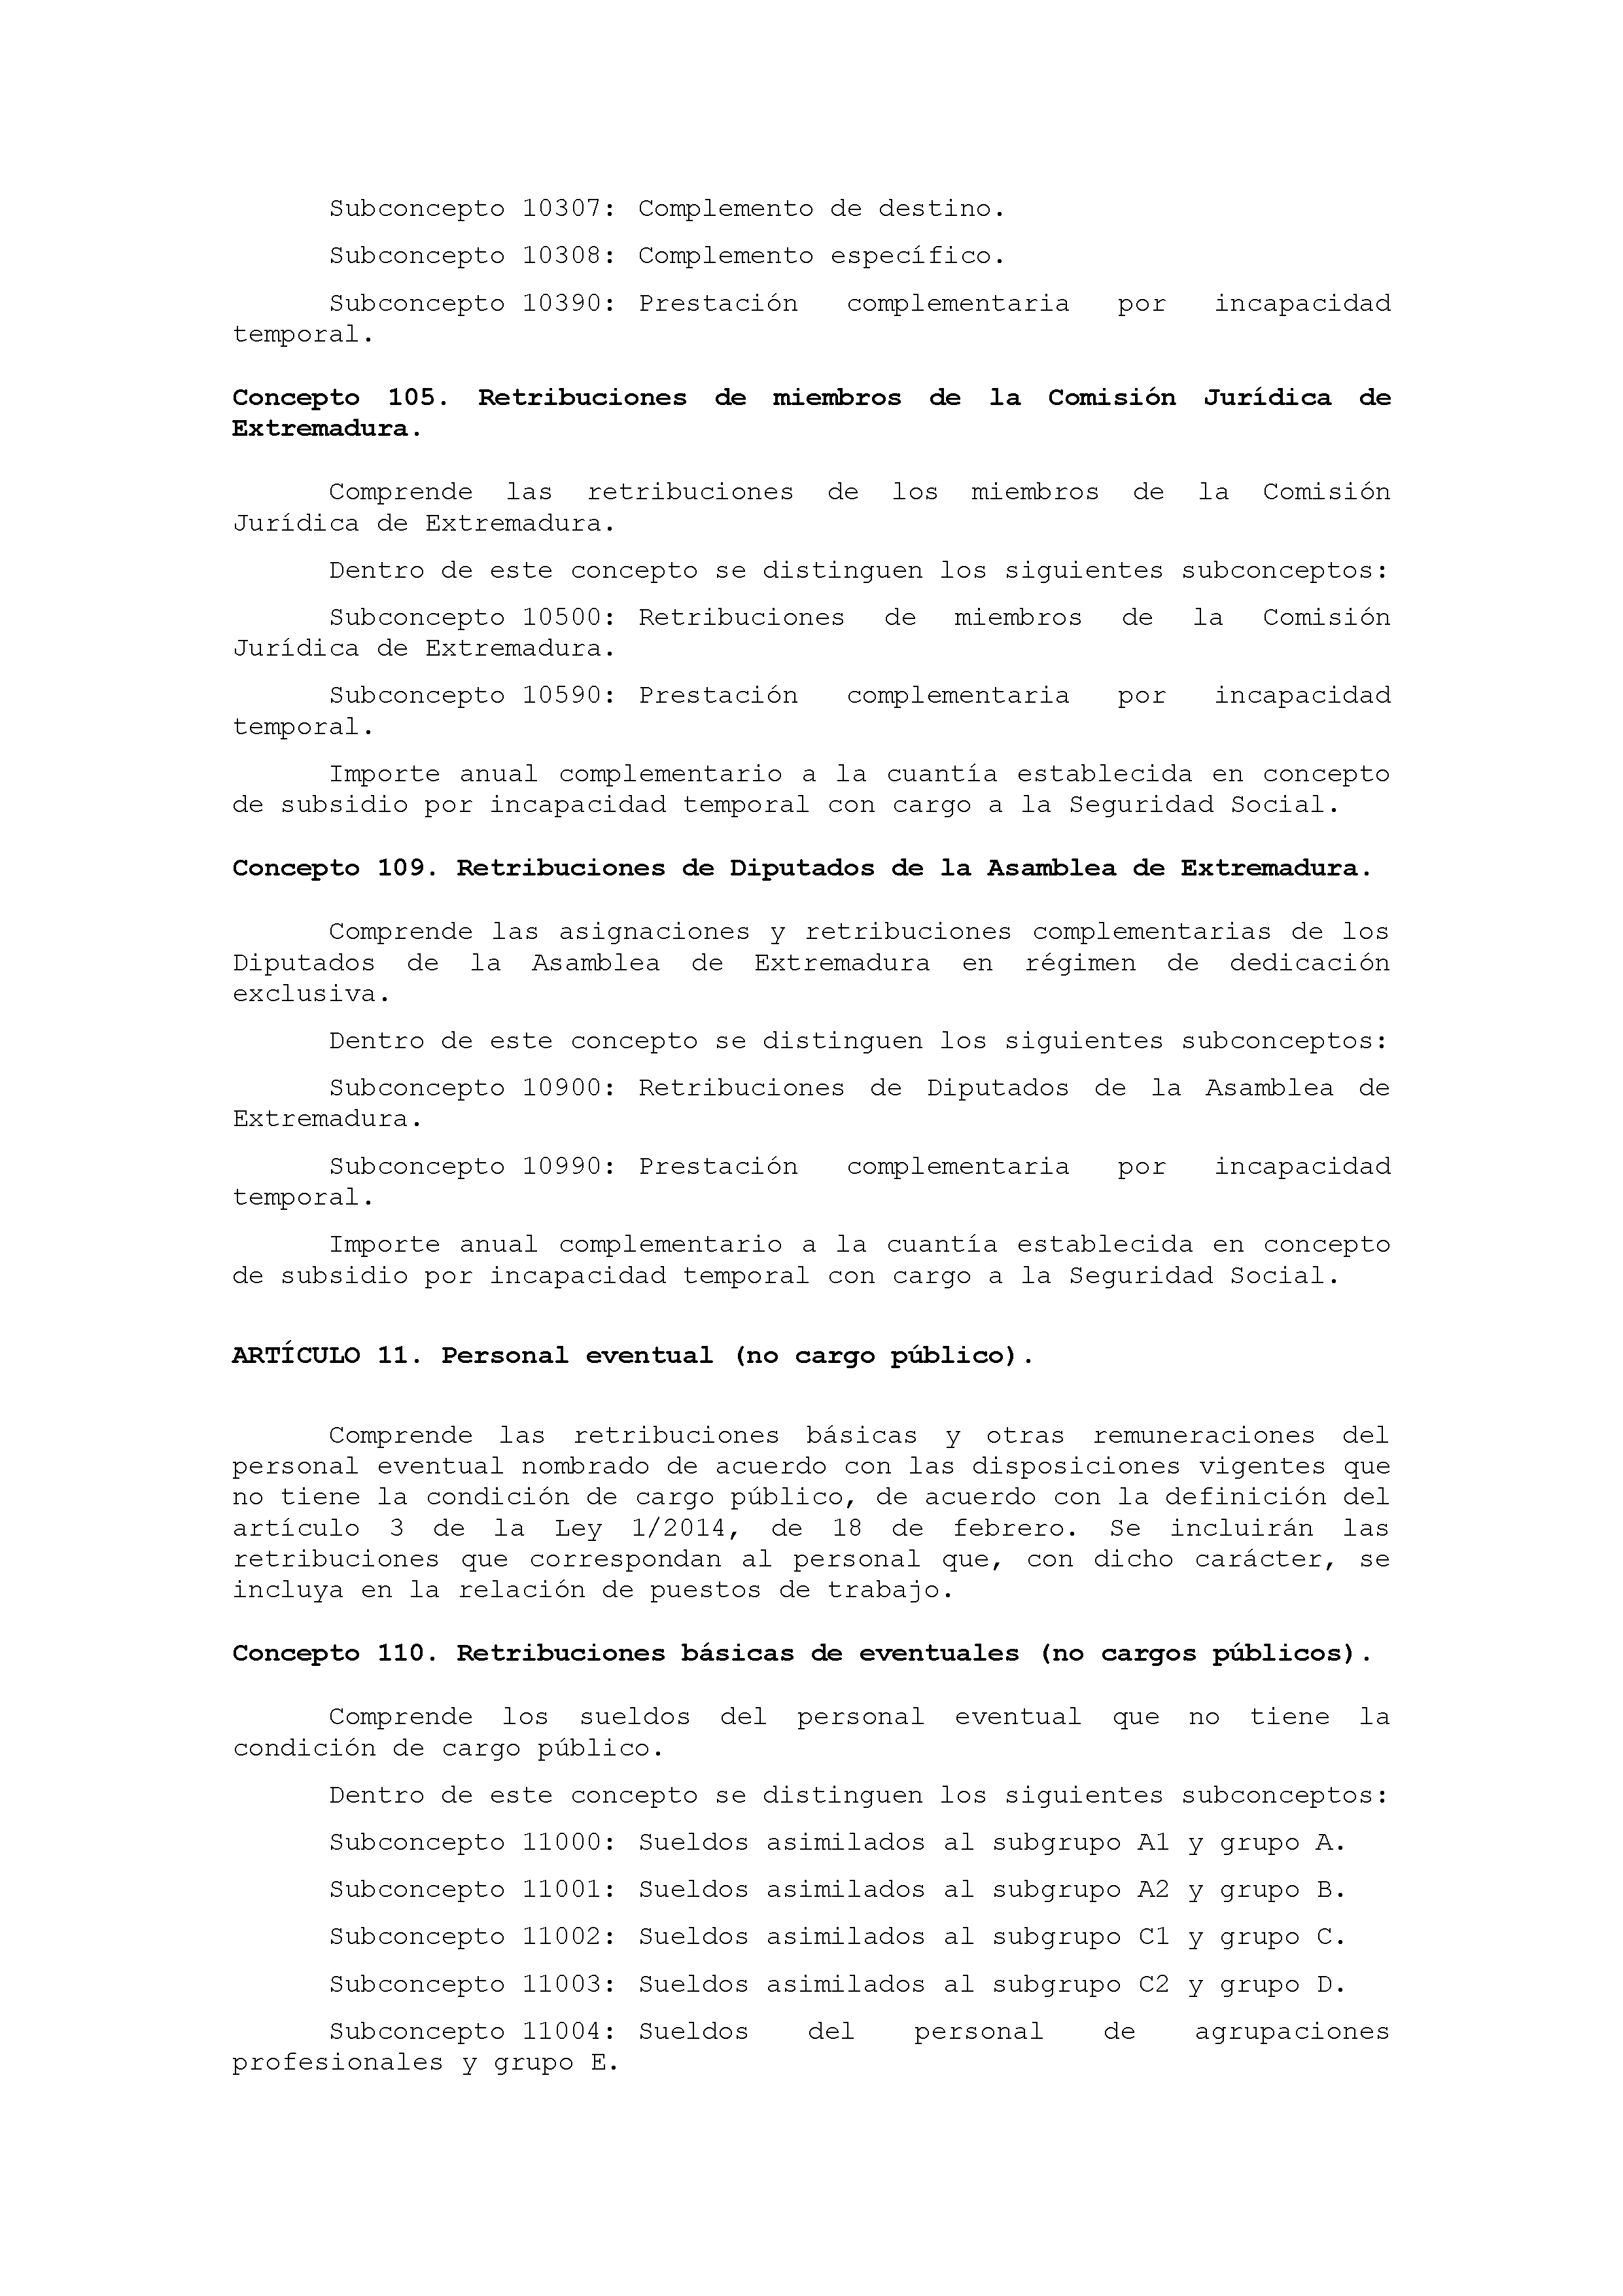 ANEXO IX CÓDIGO DE LA CLASIFICACIÓN ECONÓMICA DE LOS GASTOS PÚBLICOS Pag 3